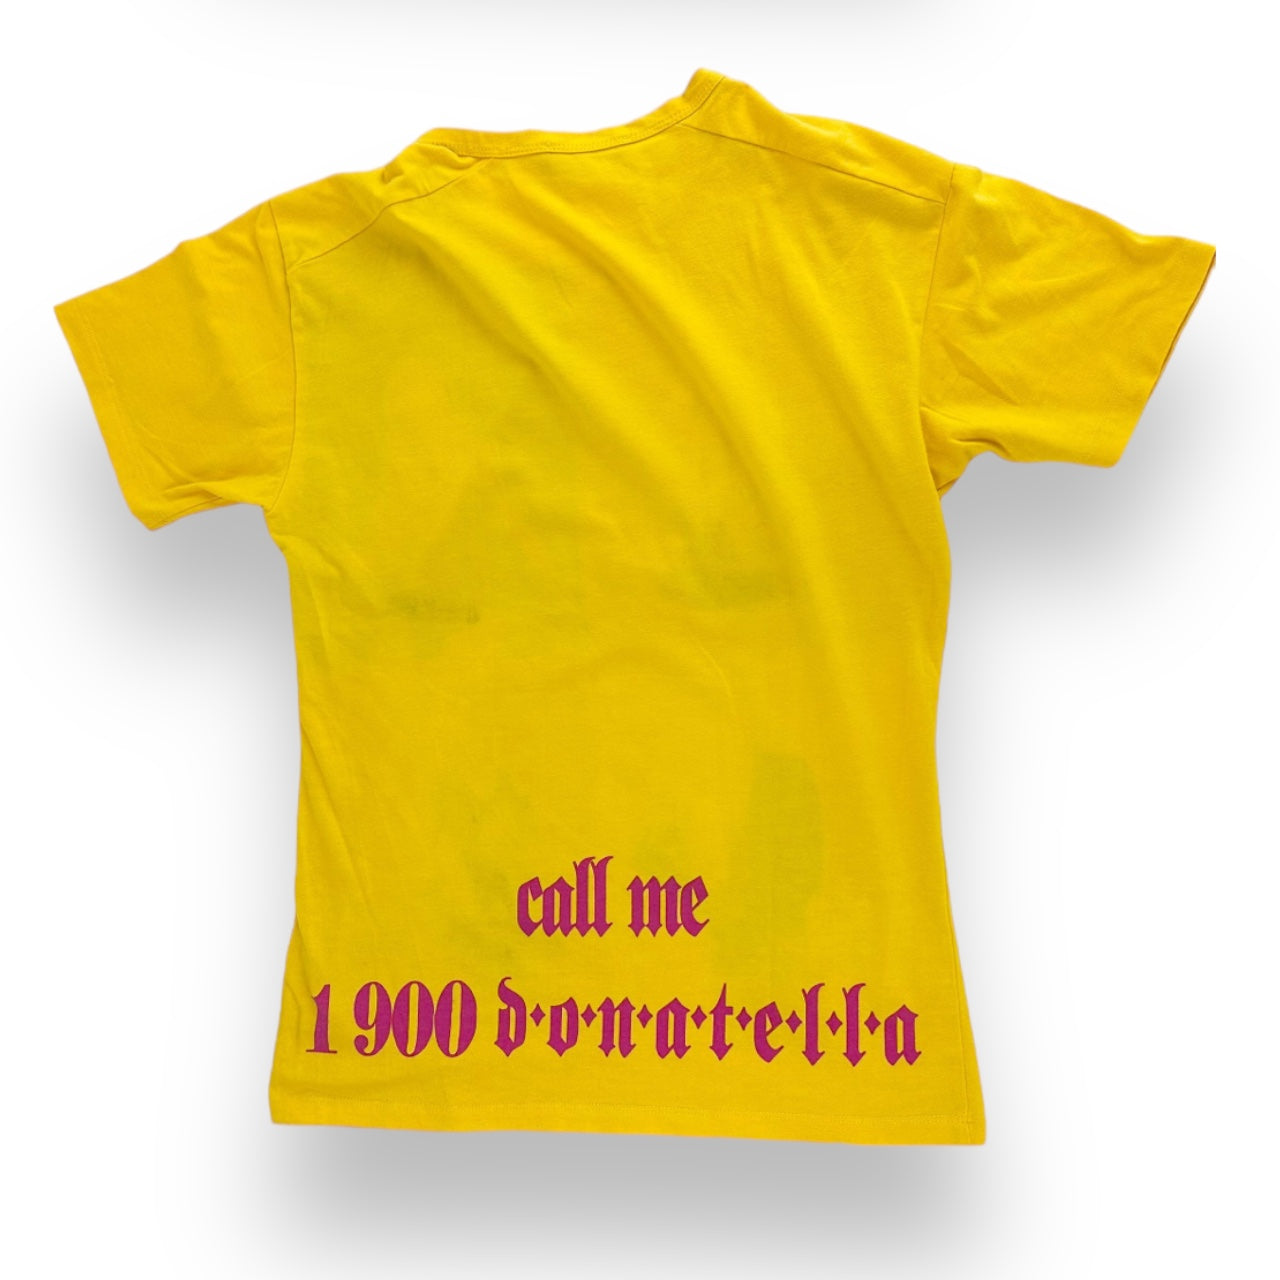 Versace Donatella “Call Me” Shirt